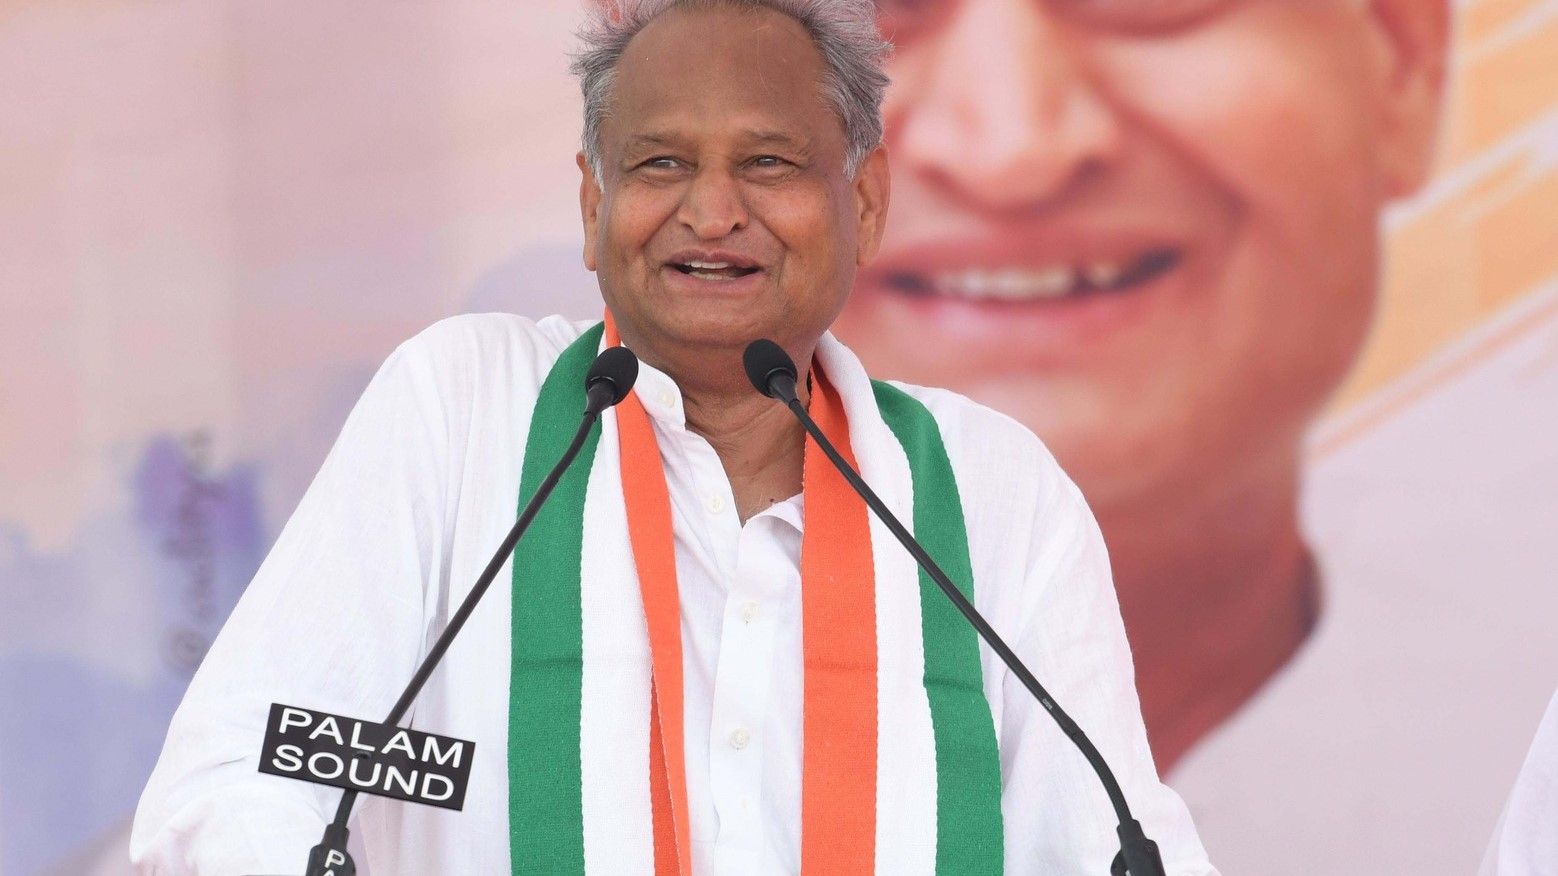 nomination for Congress President election 2022 amid Rajasthan crisis - Satya Hindi